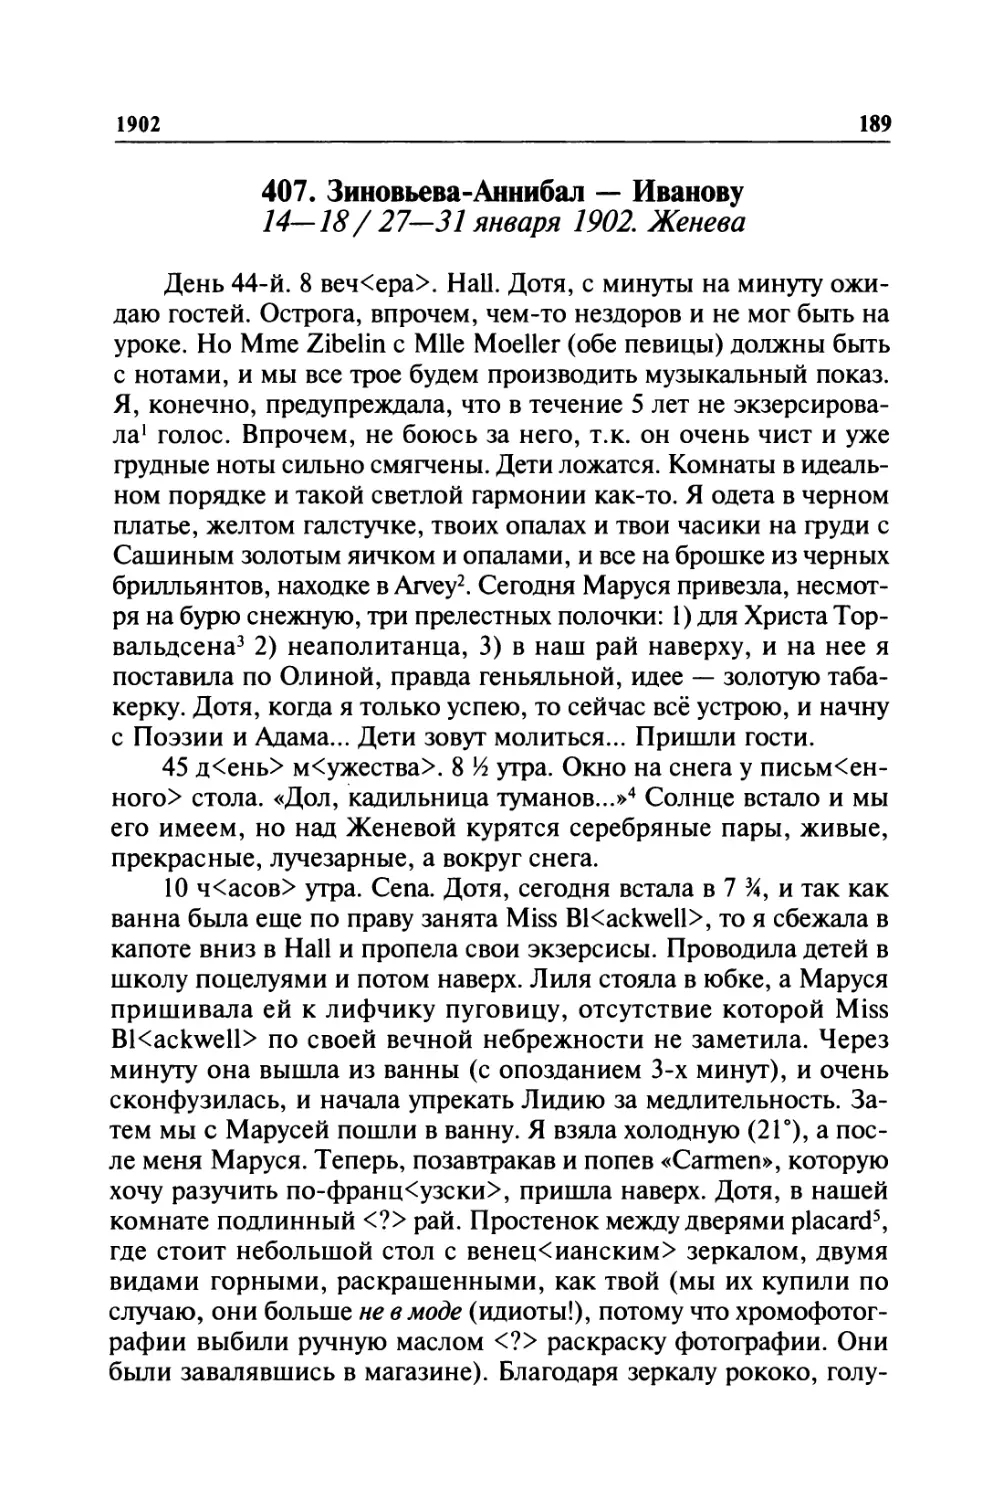 407. Зиновьева-Аннибал — Иванову. 14—18/ 27—31 января 1902. Женева